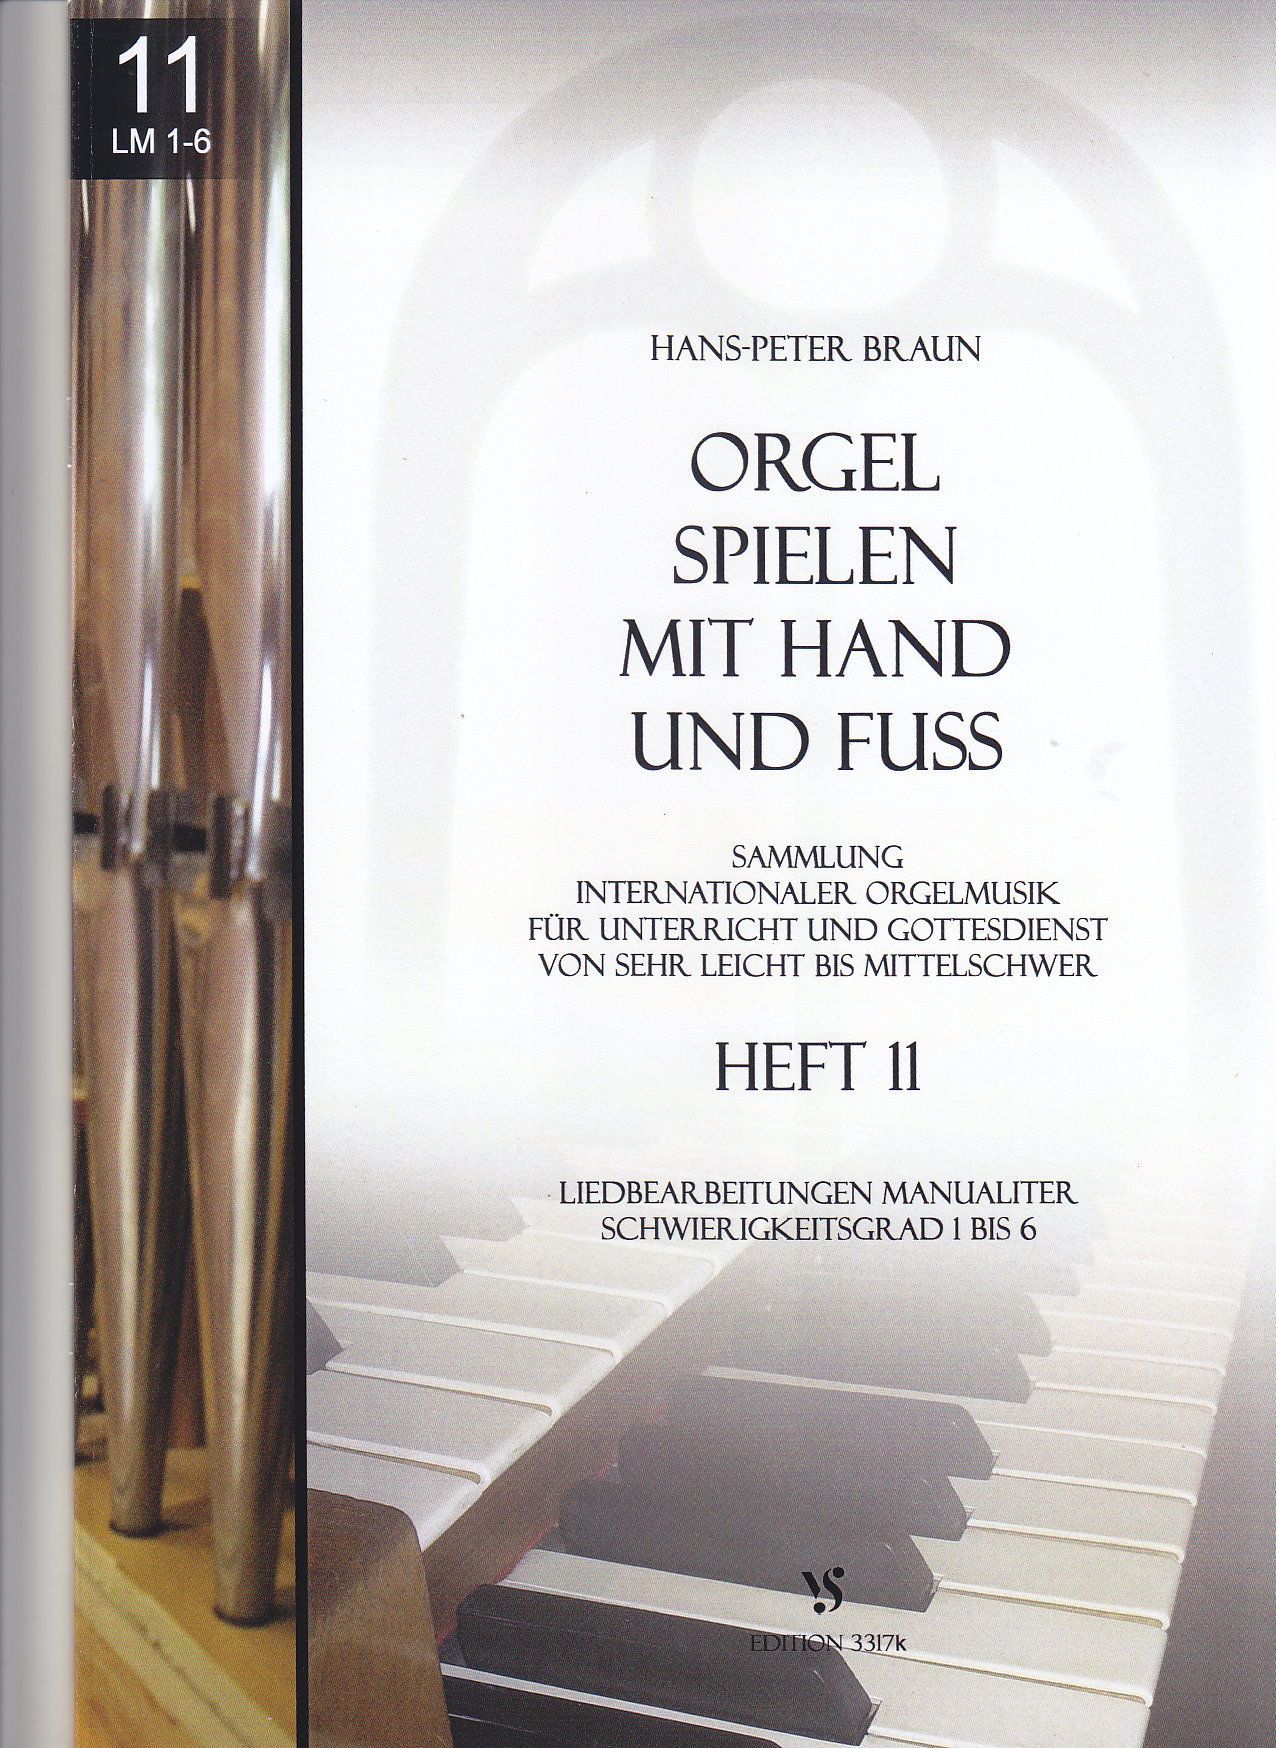 Noten Orgel spielen mit Hand und Fuss 11 Strube 3317k Hans P. Braun manualiter  - Onlineshop Musikhaus Markstein